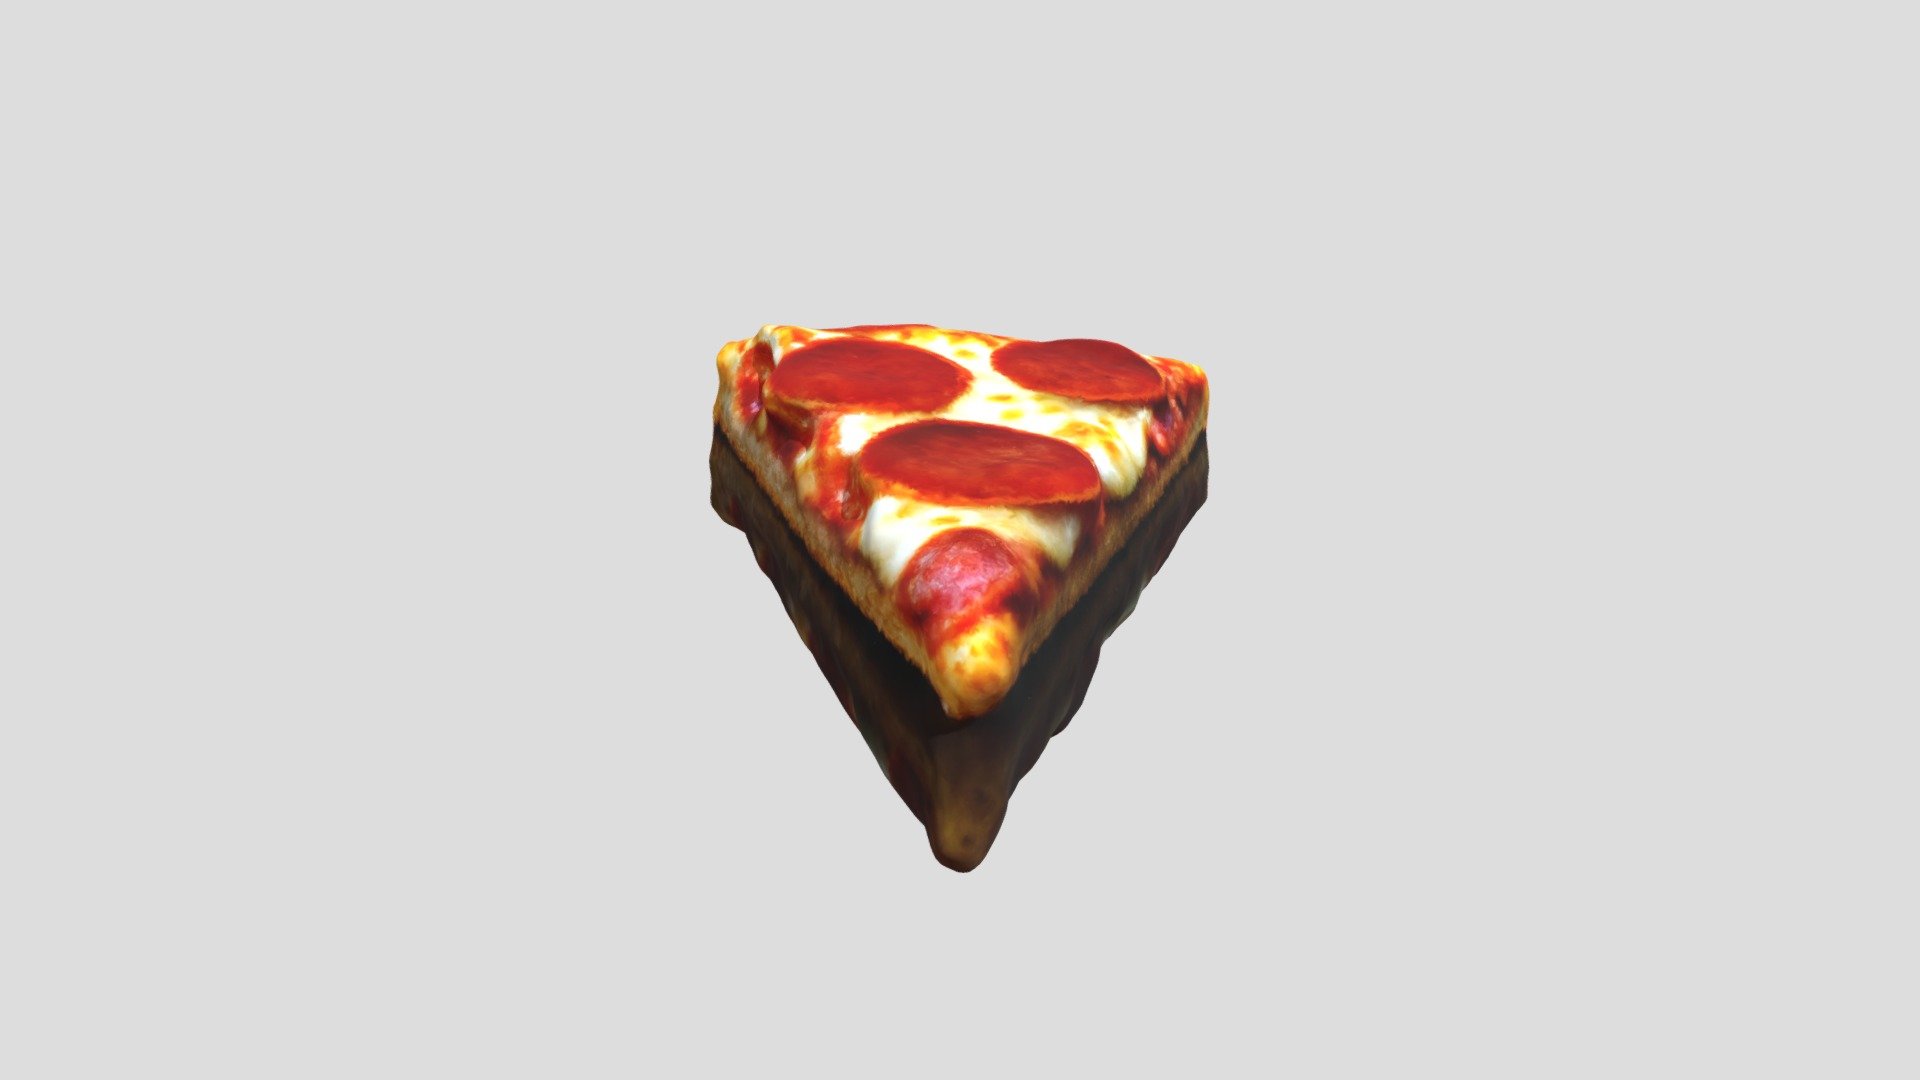 pizzaAI - 3D model by Art Renders (@ArtRenders) [2ba33cd] - Sketchfab